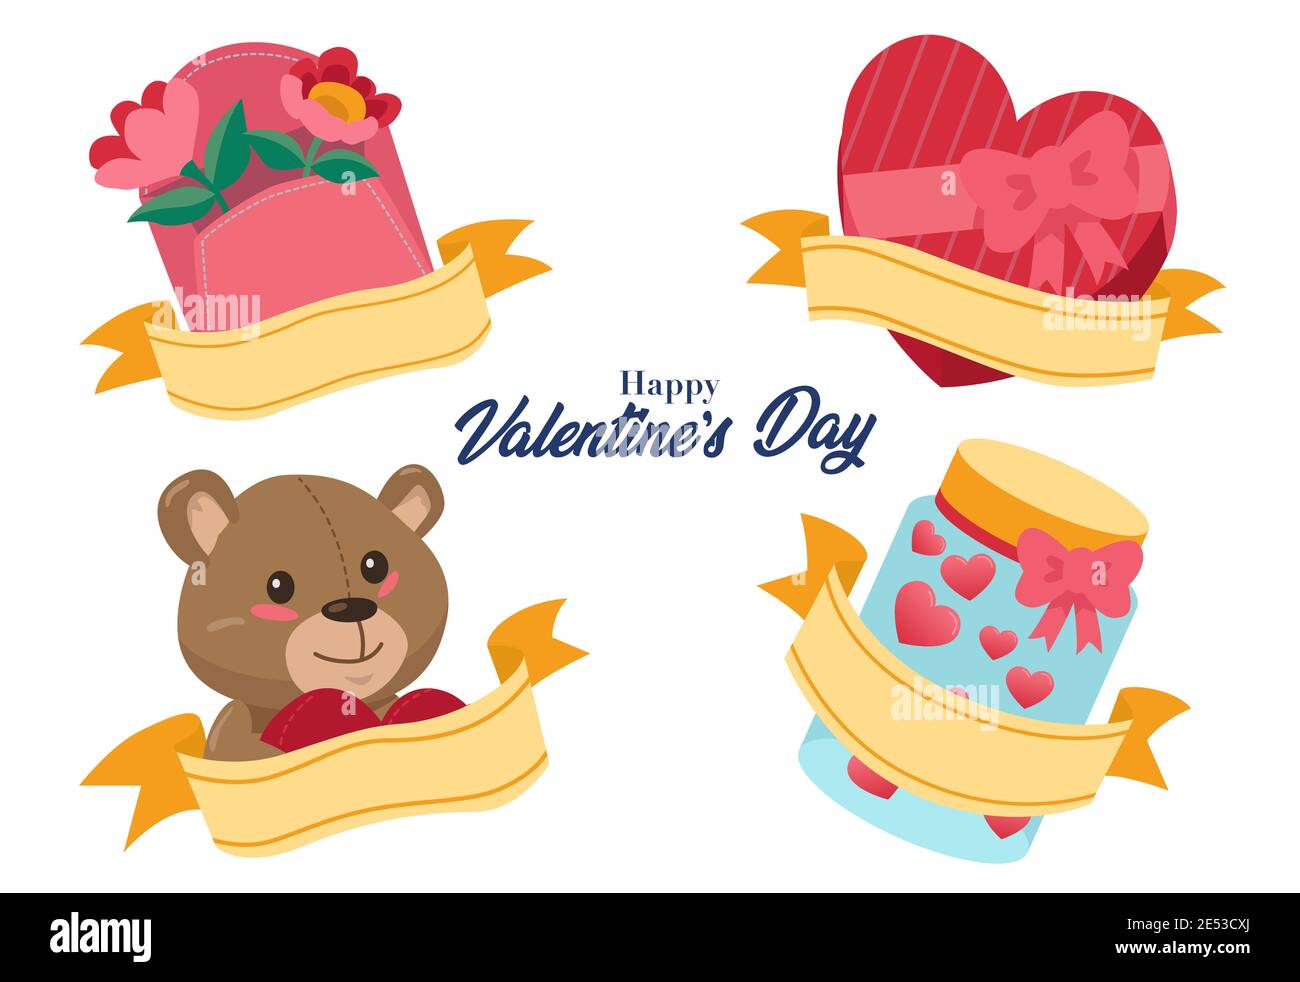 Una collezione di regali che vengono spesso offerti durante il giorno di San Valentino, come orsacchiotti, fiori e cioccolatini a forma di cuore Illustrazione Vettoriale